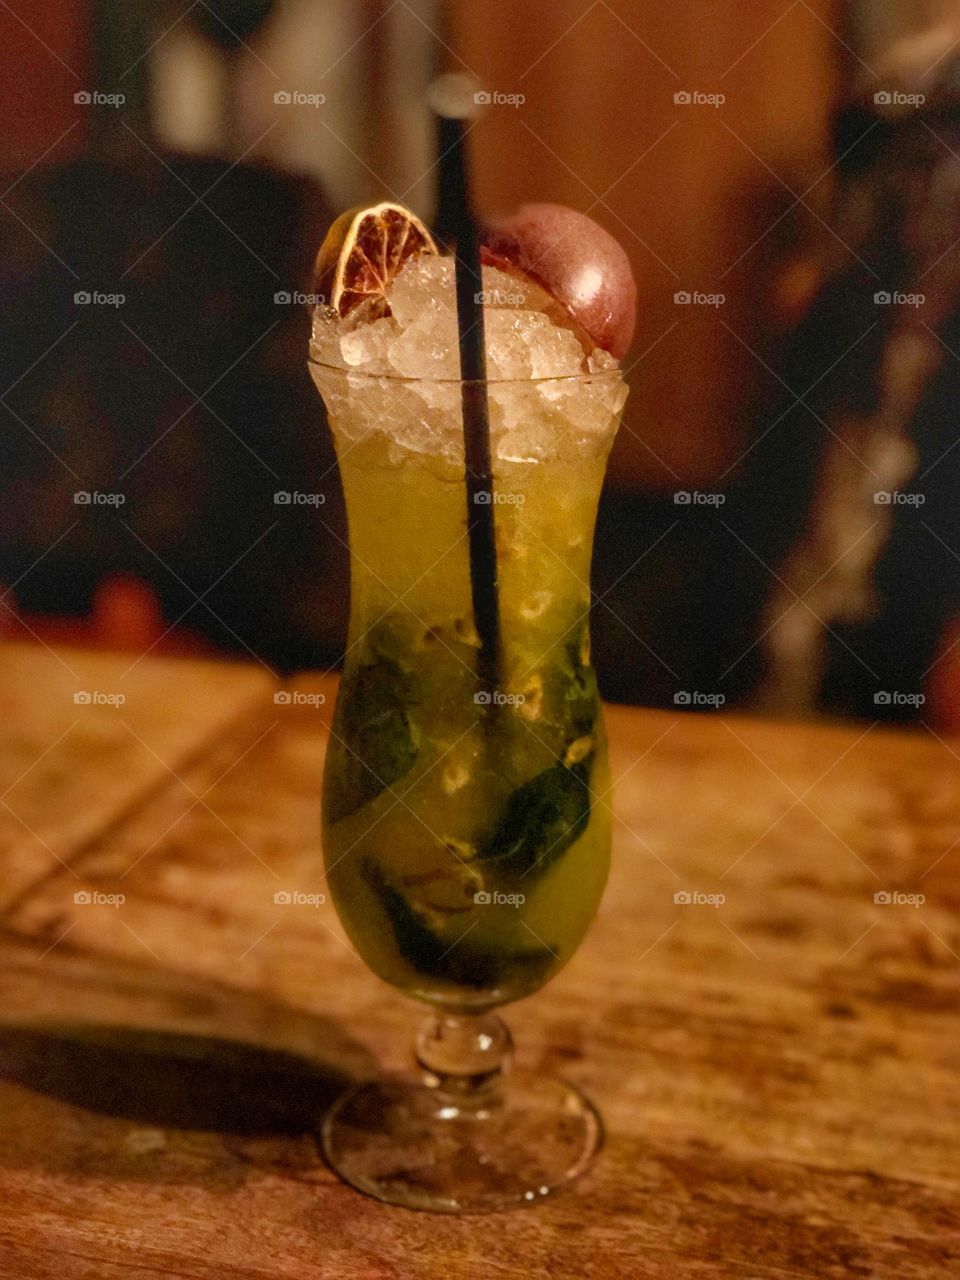 Mojito cocktail 